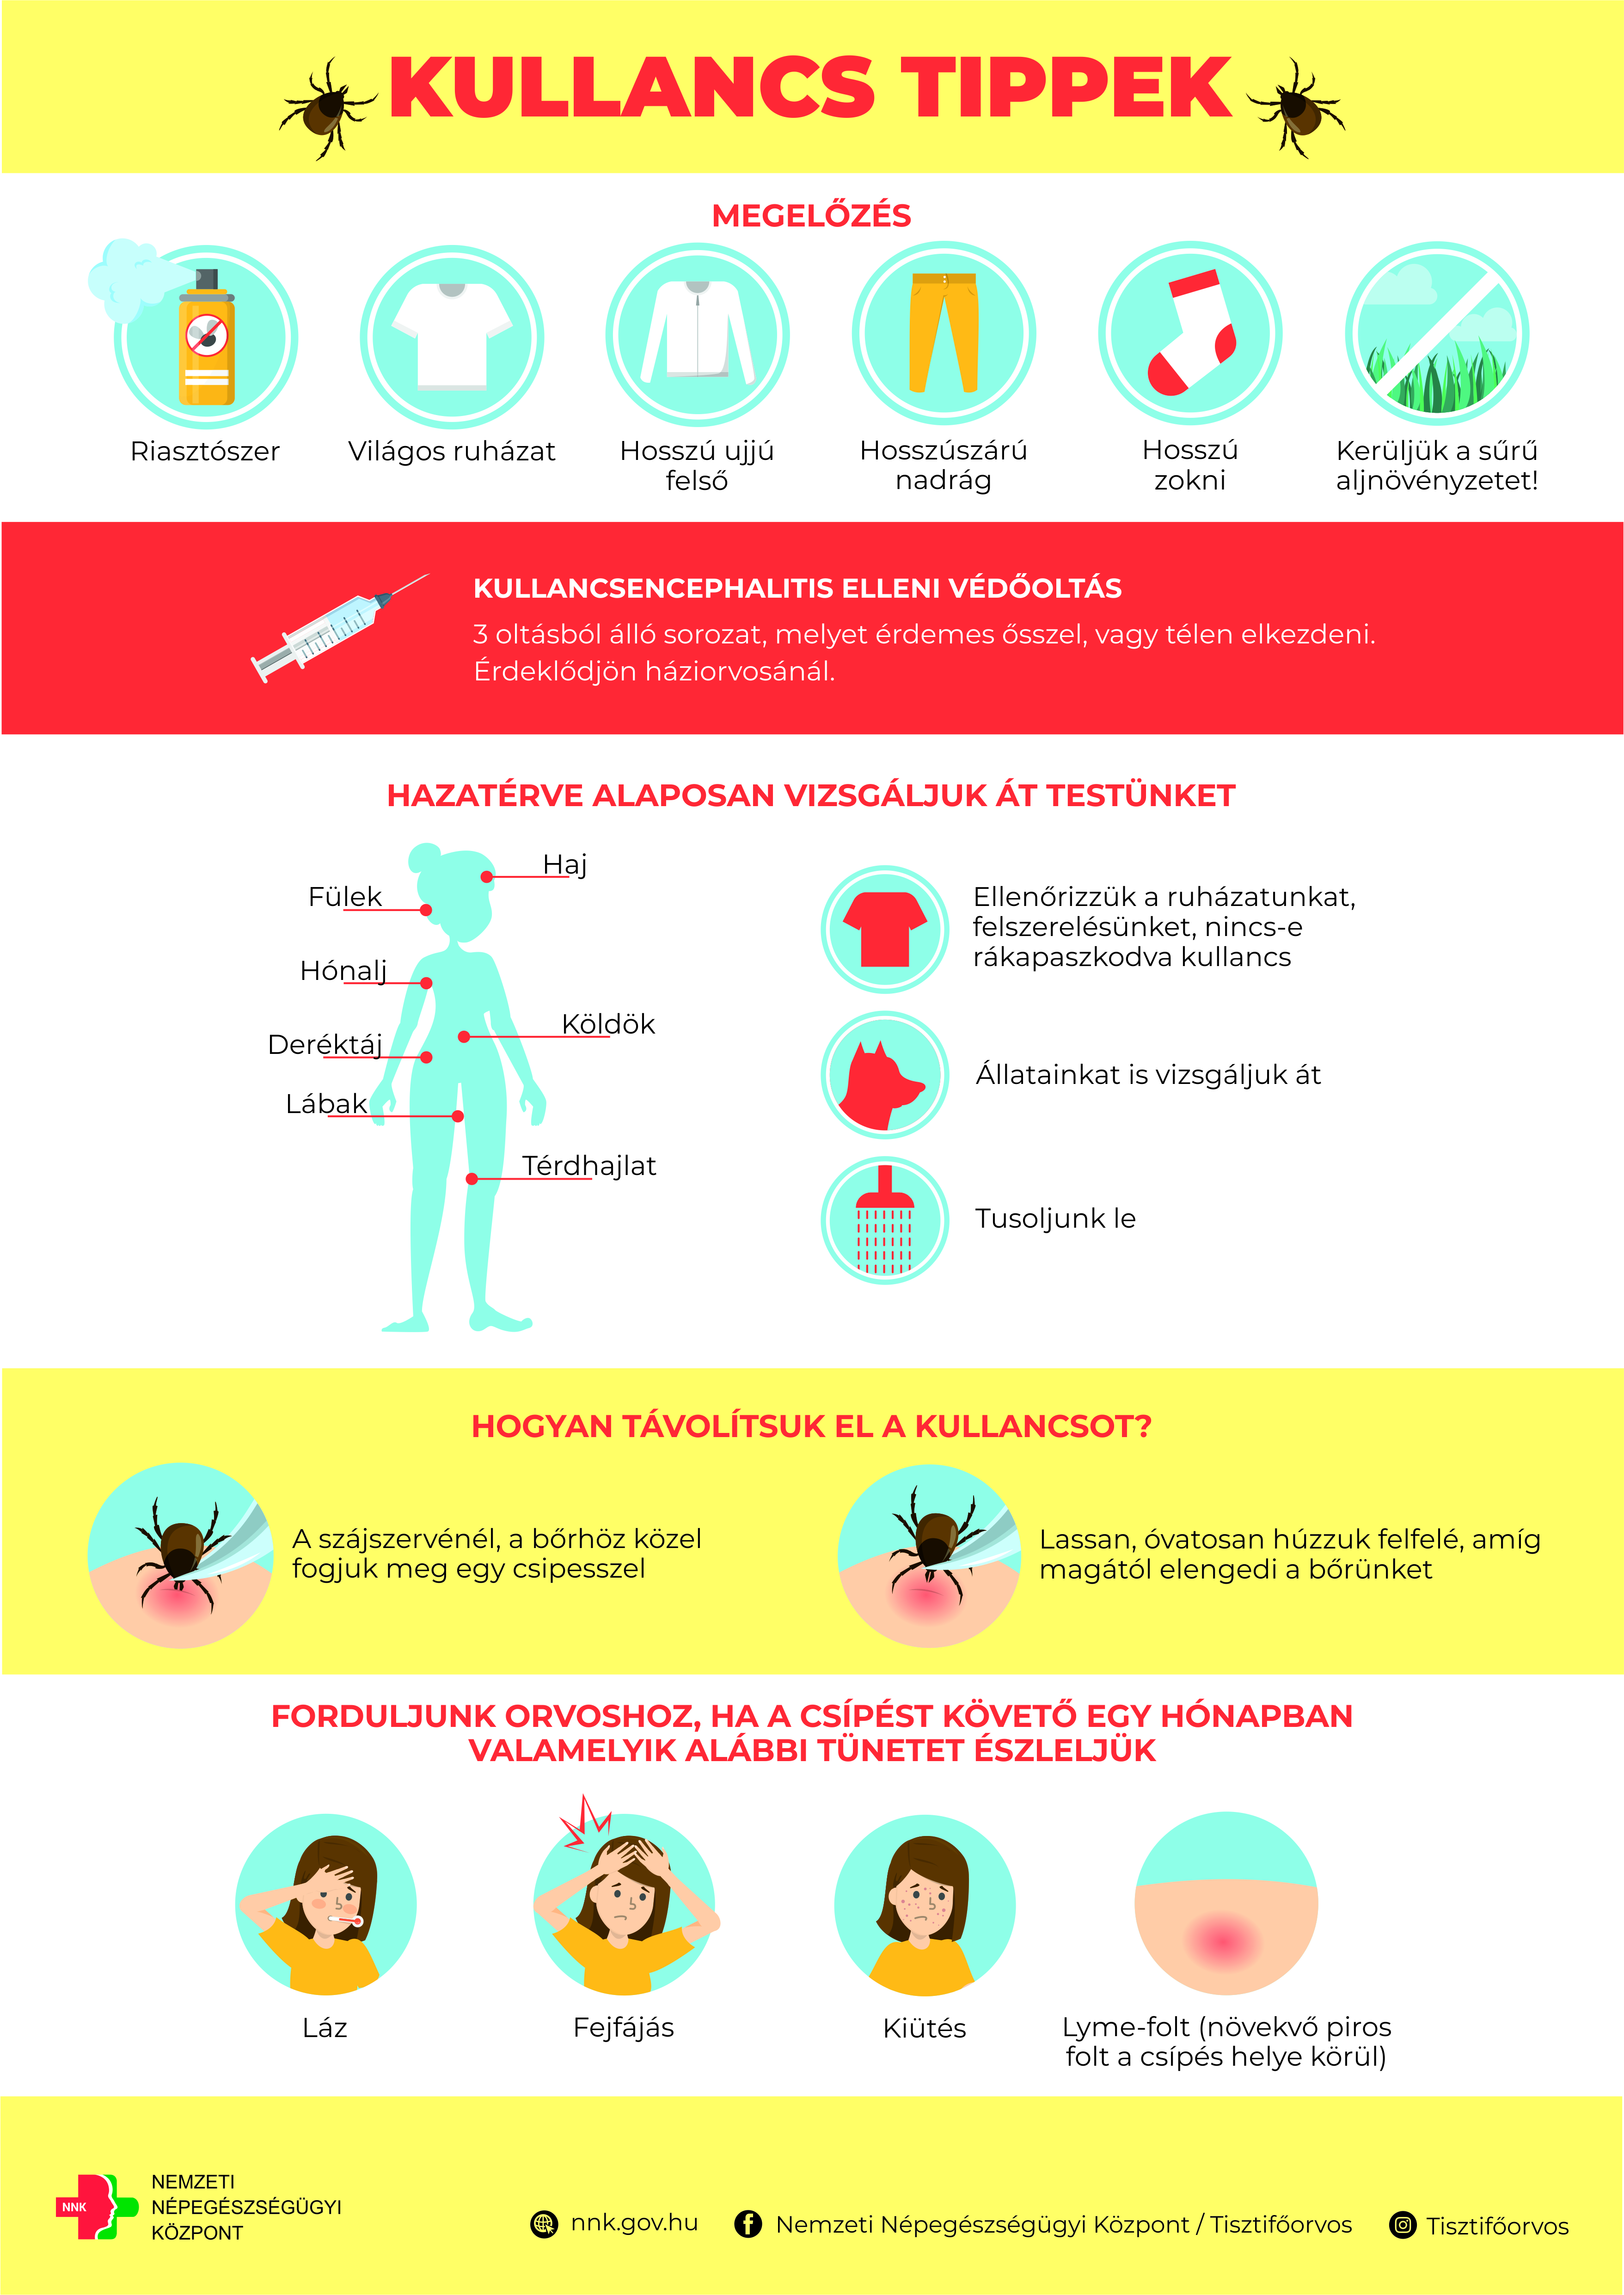 Koronavírus, megfázás, influenza vagy allergia?